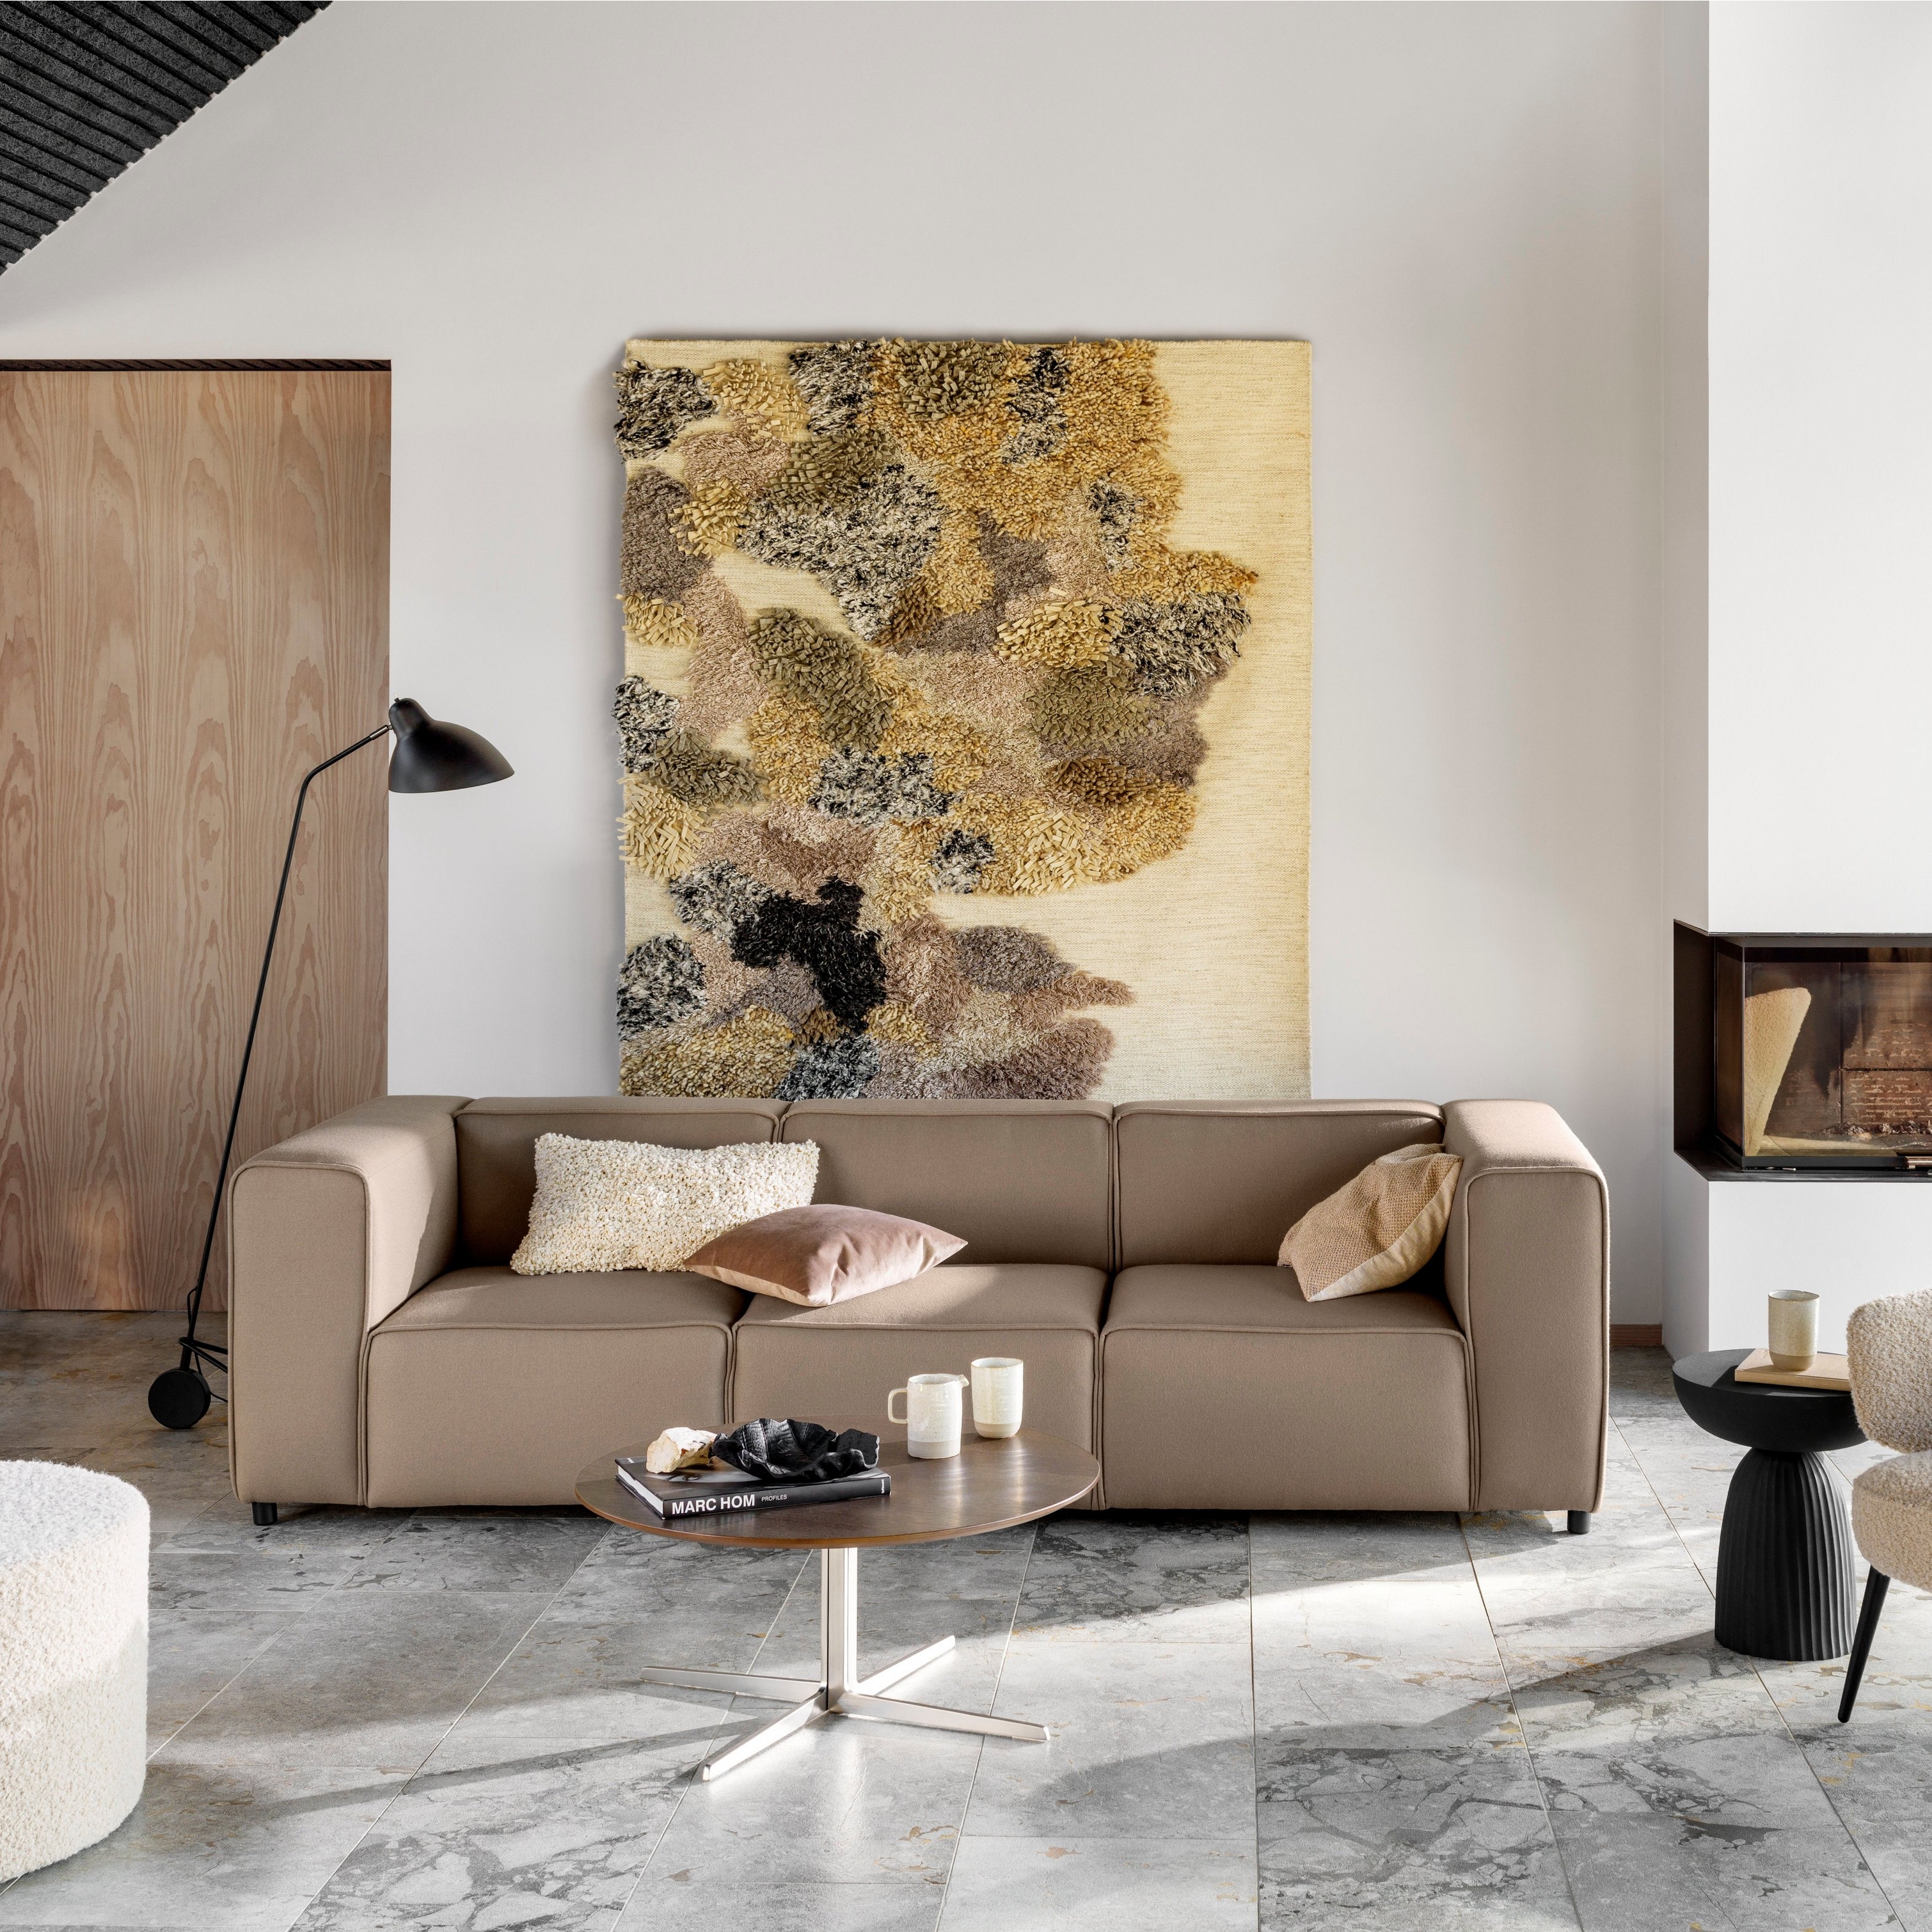 Salon avec canapé, chaise, oeuvre d’art, cheminée, lampadaire et sol en marbre.